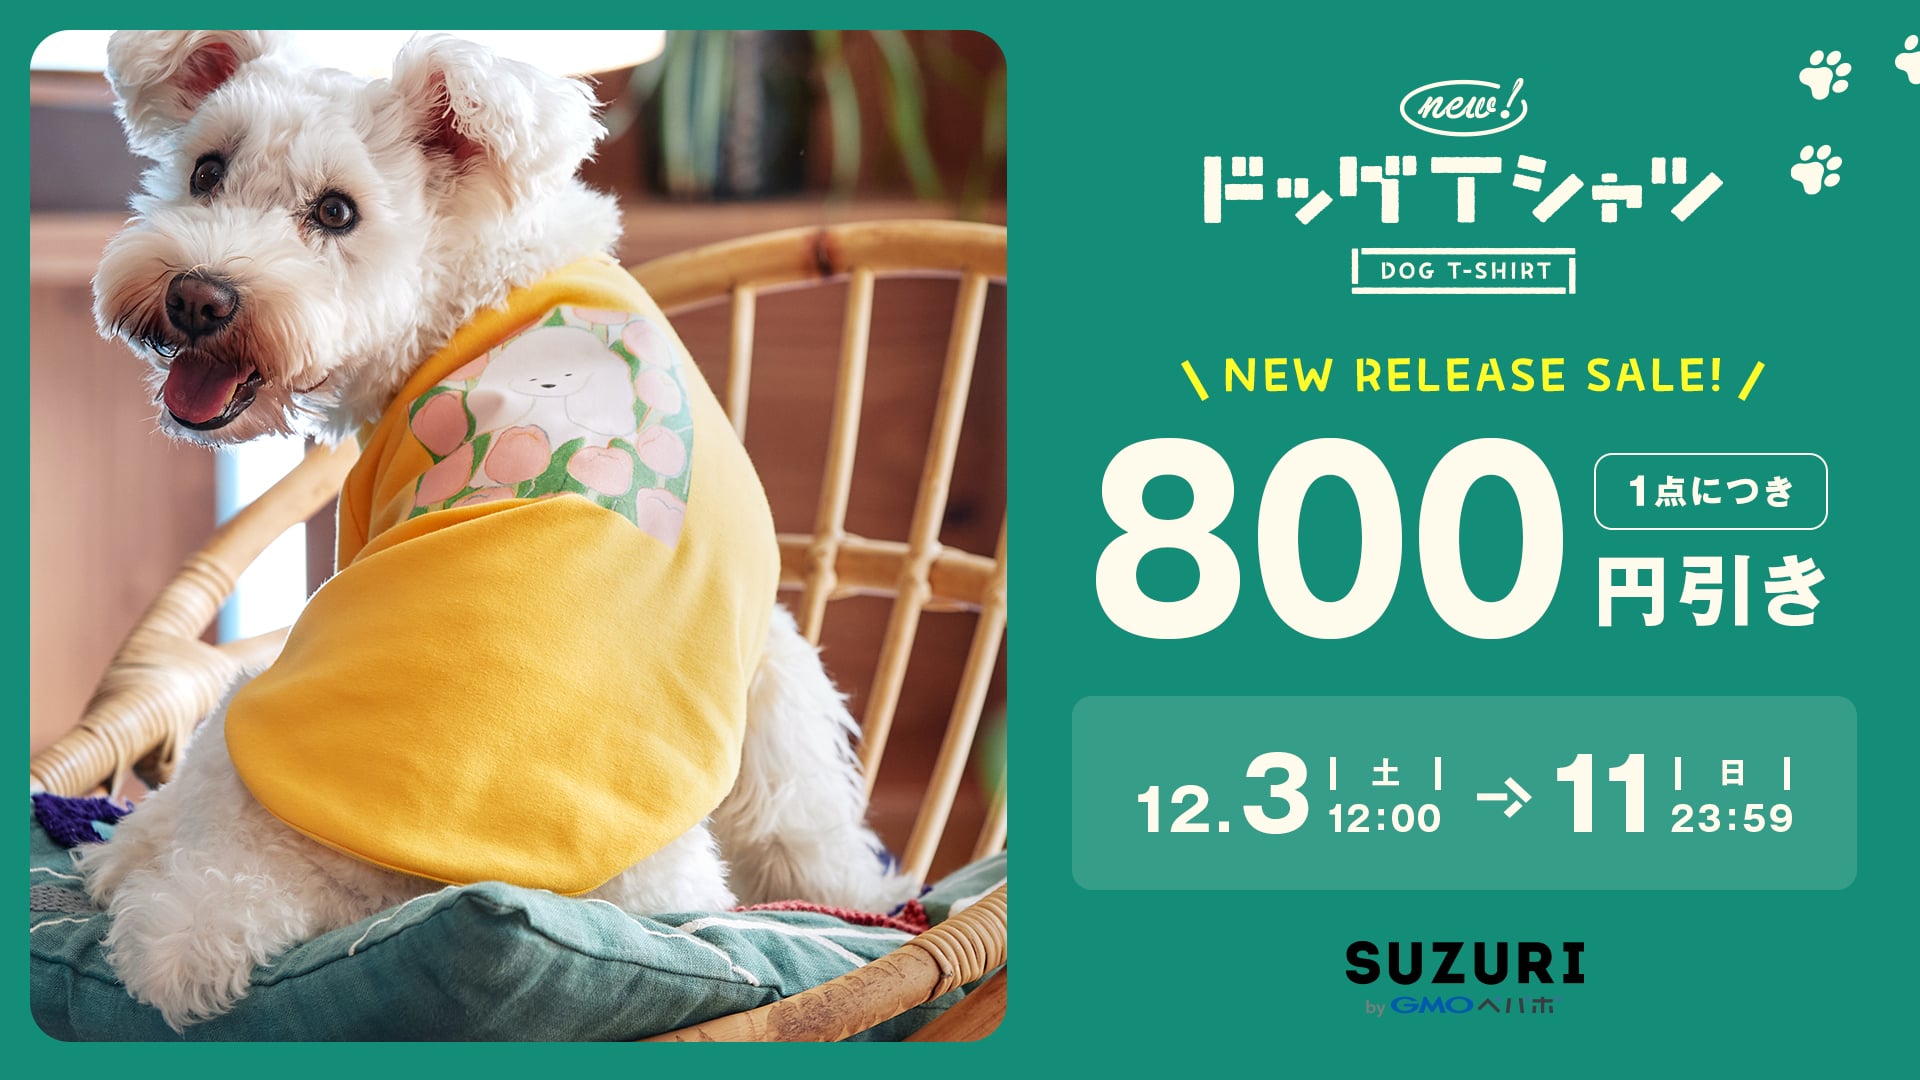 SUZURI byGMOペパボ「ドッグTシャツ」リリース記念セールのバナー画像。背景に写真が印刷された「ドッグTシャツ」を着た犬がこちらを見つめている様子。